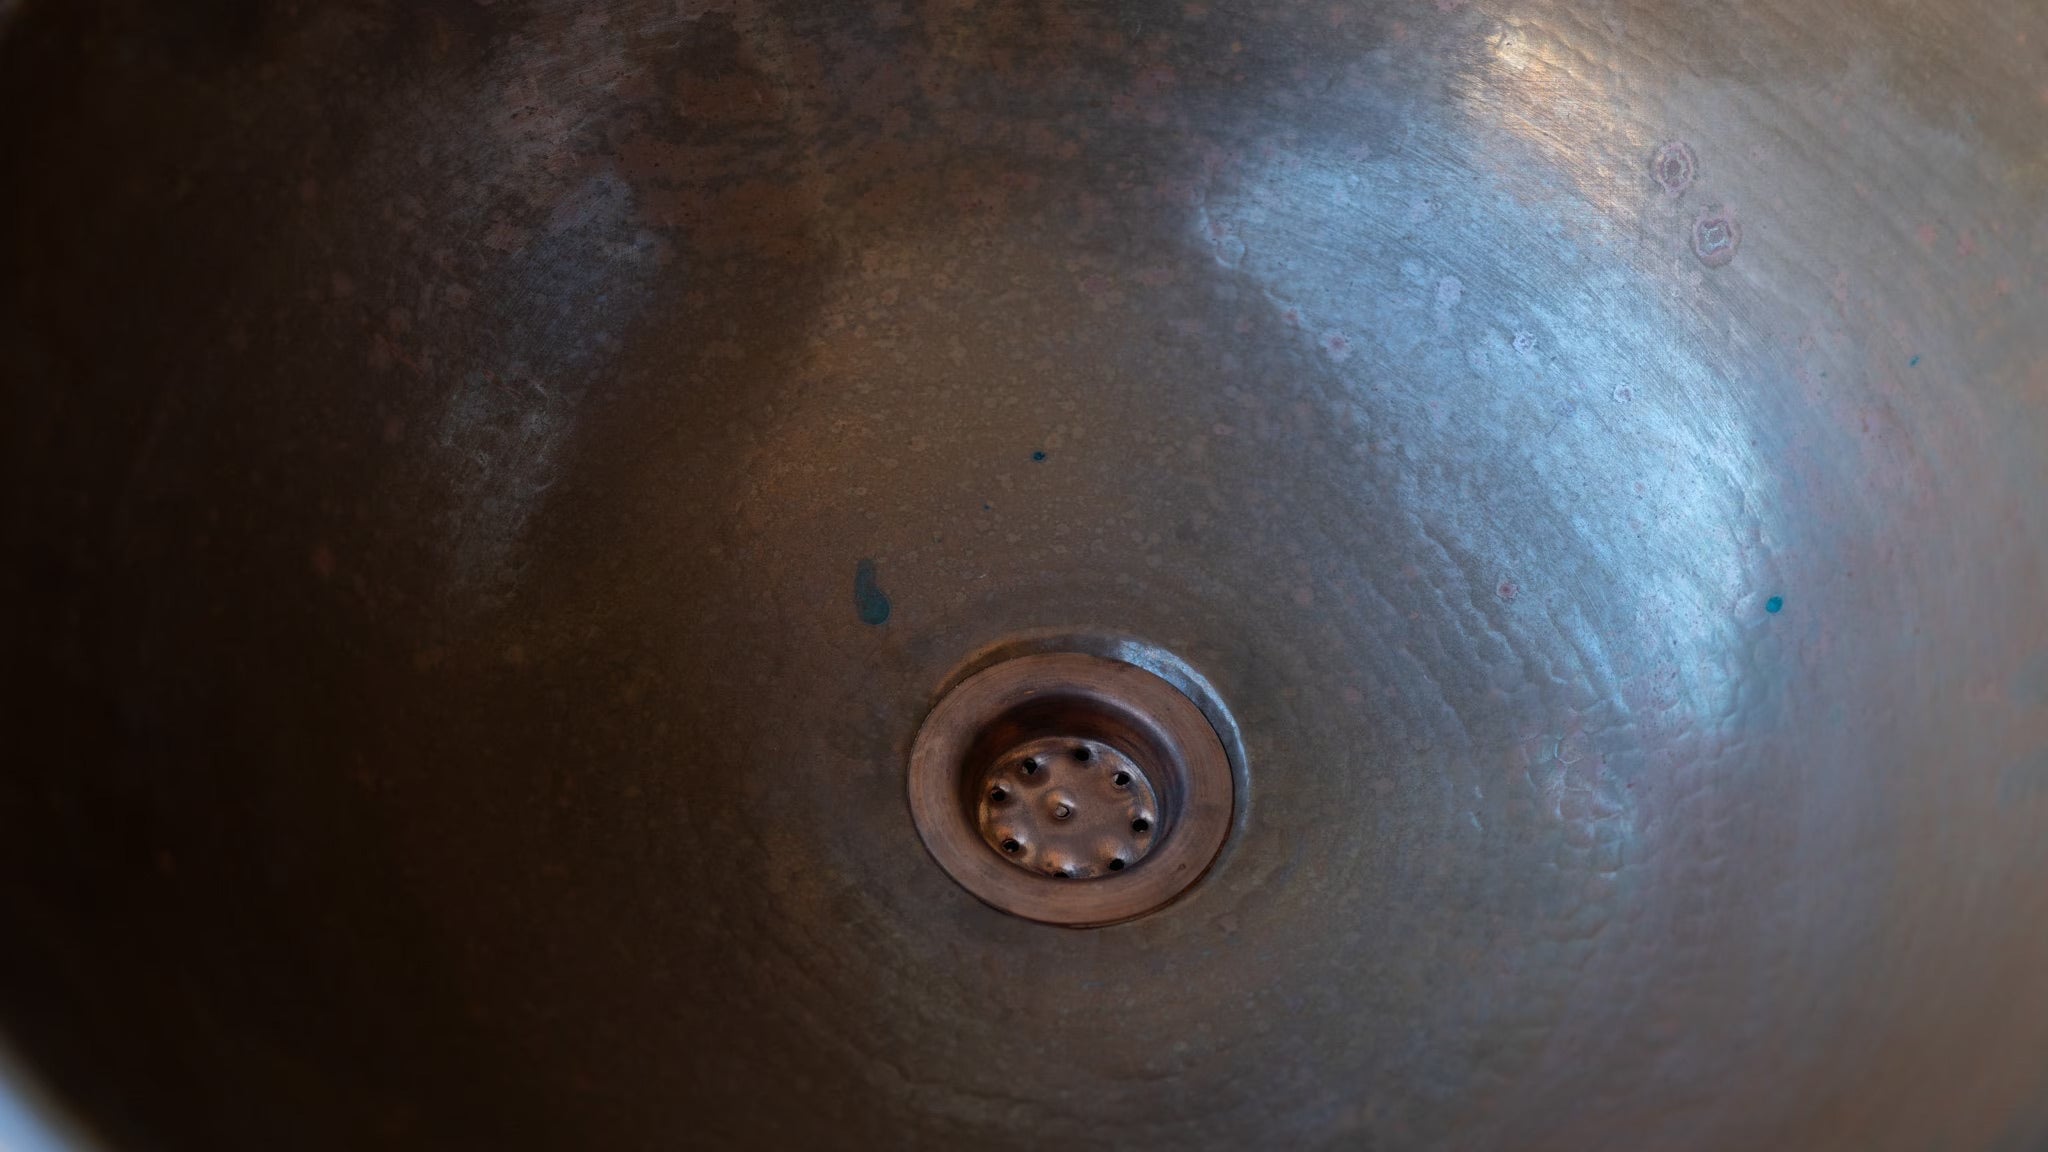 Copper Vessel Sink Basin Solid Bathroom Vessel Vanity, Counter Top Sink Bowl, Light Hammered